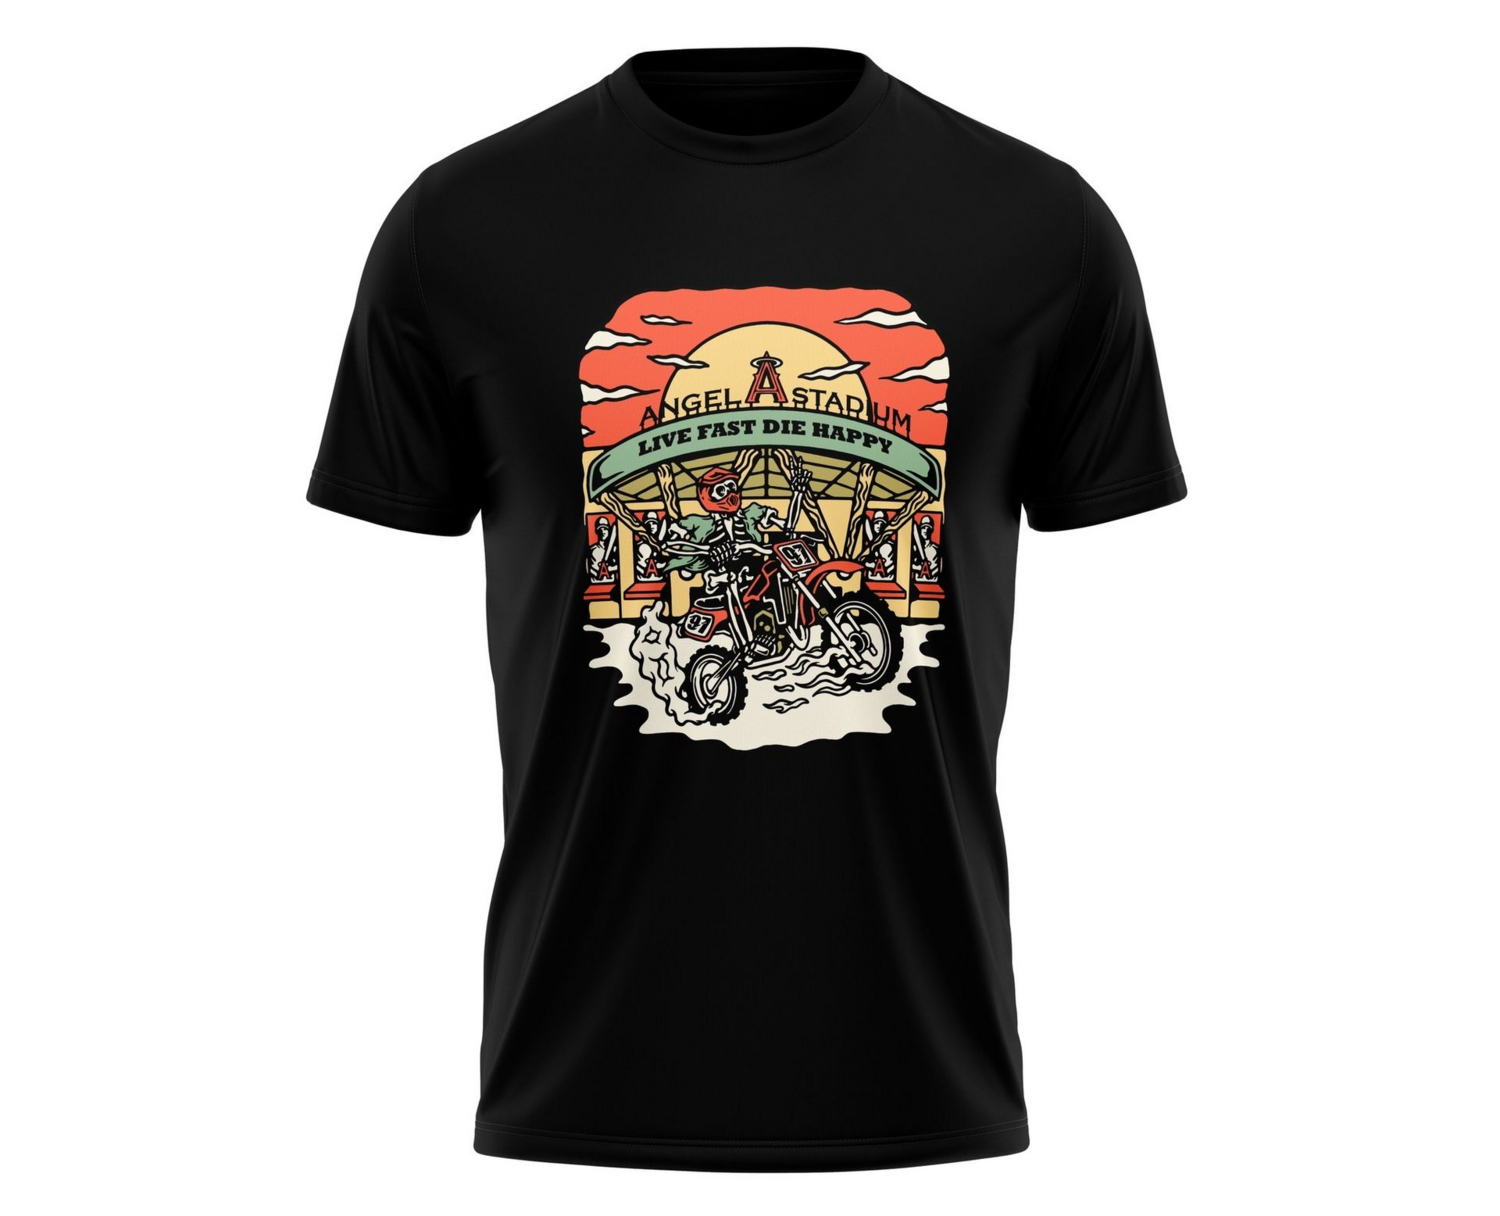 Anaheim Supercross T-Shirt